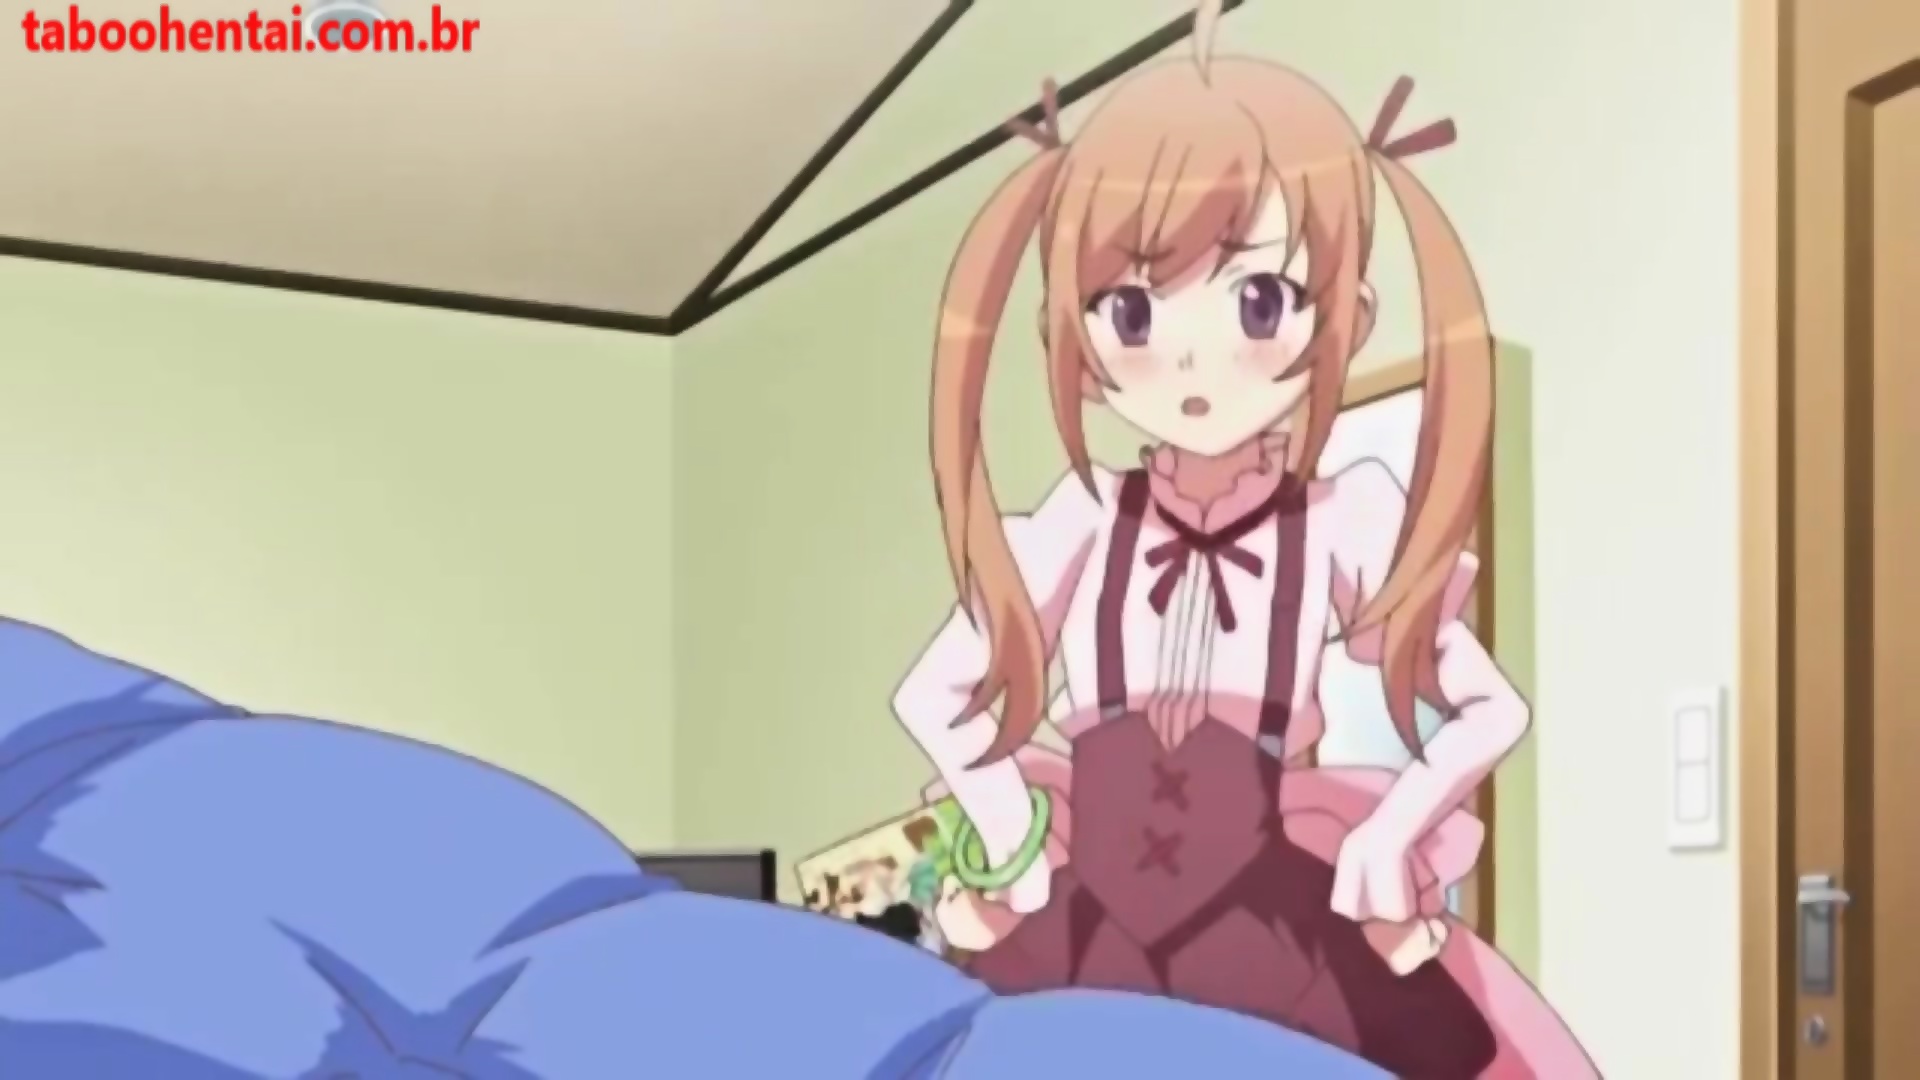 Little sister anime porn